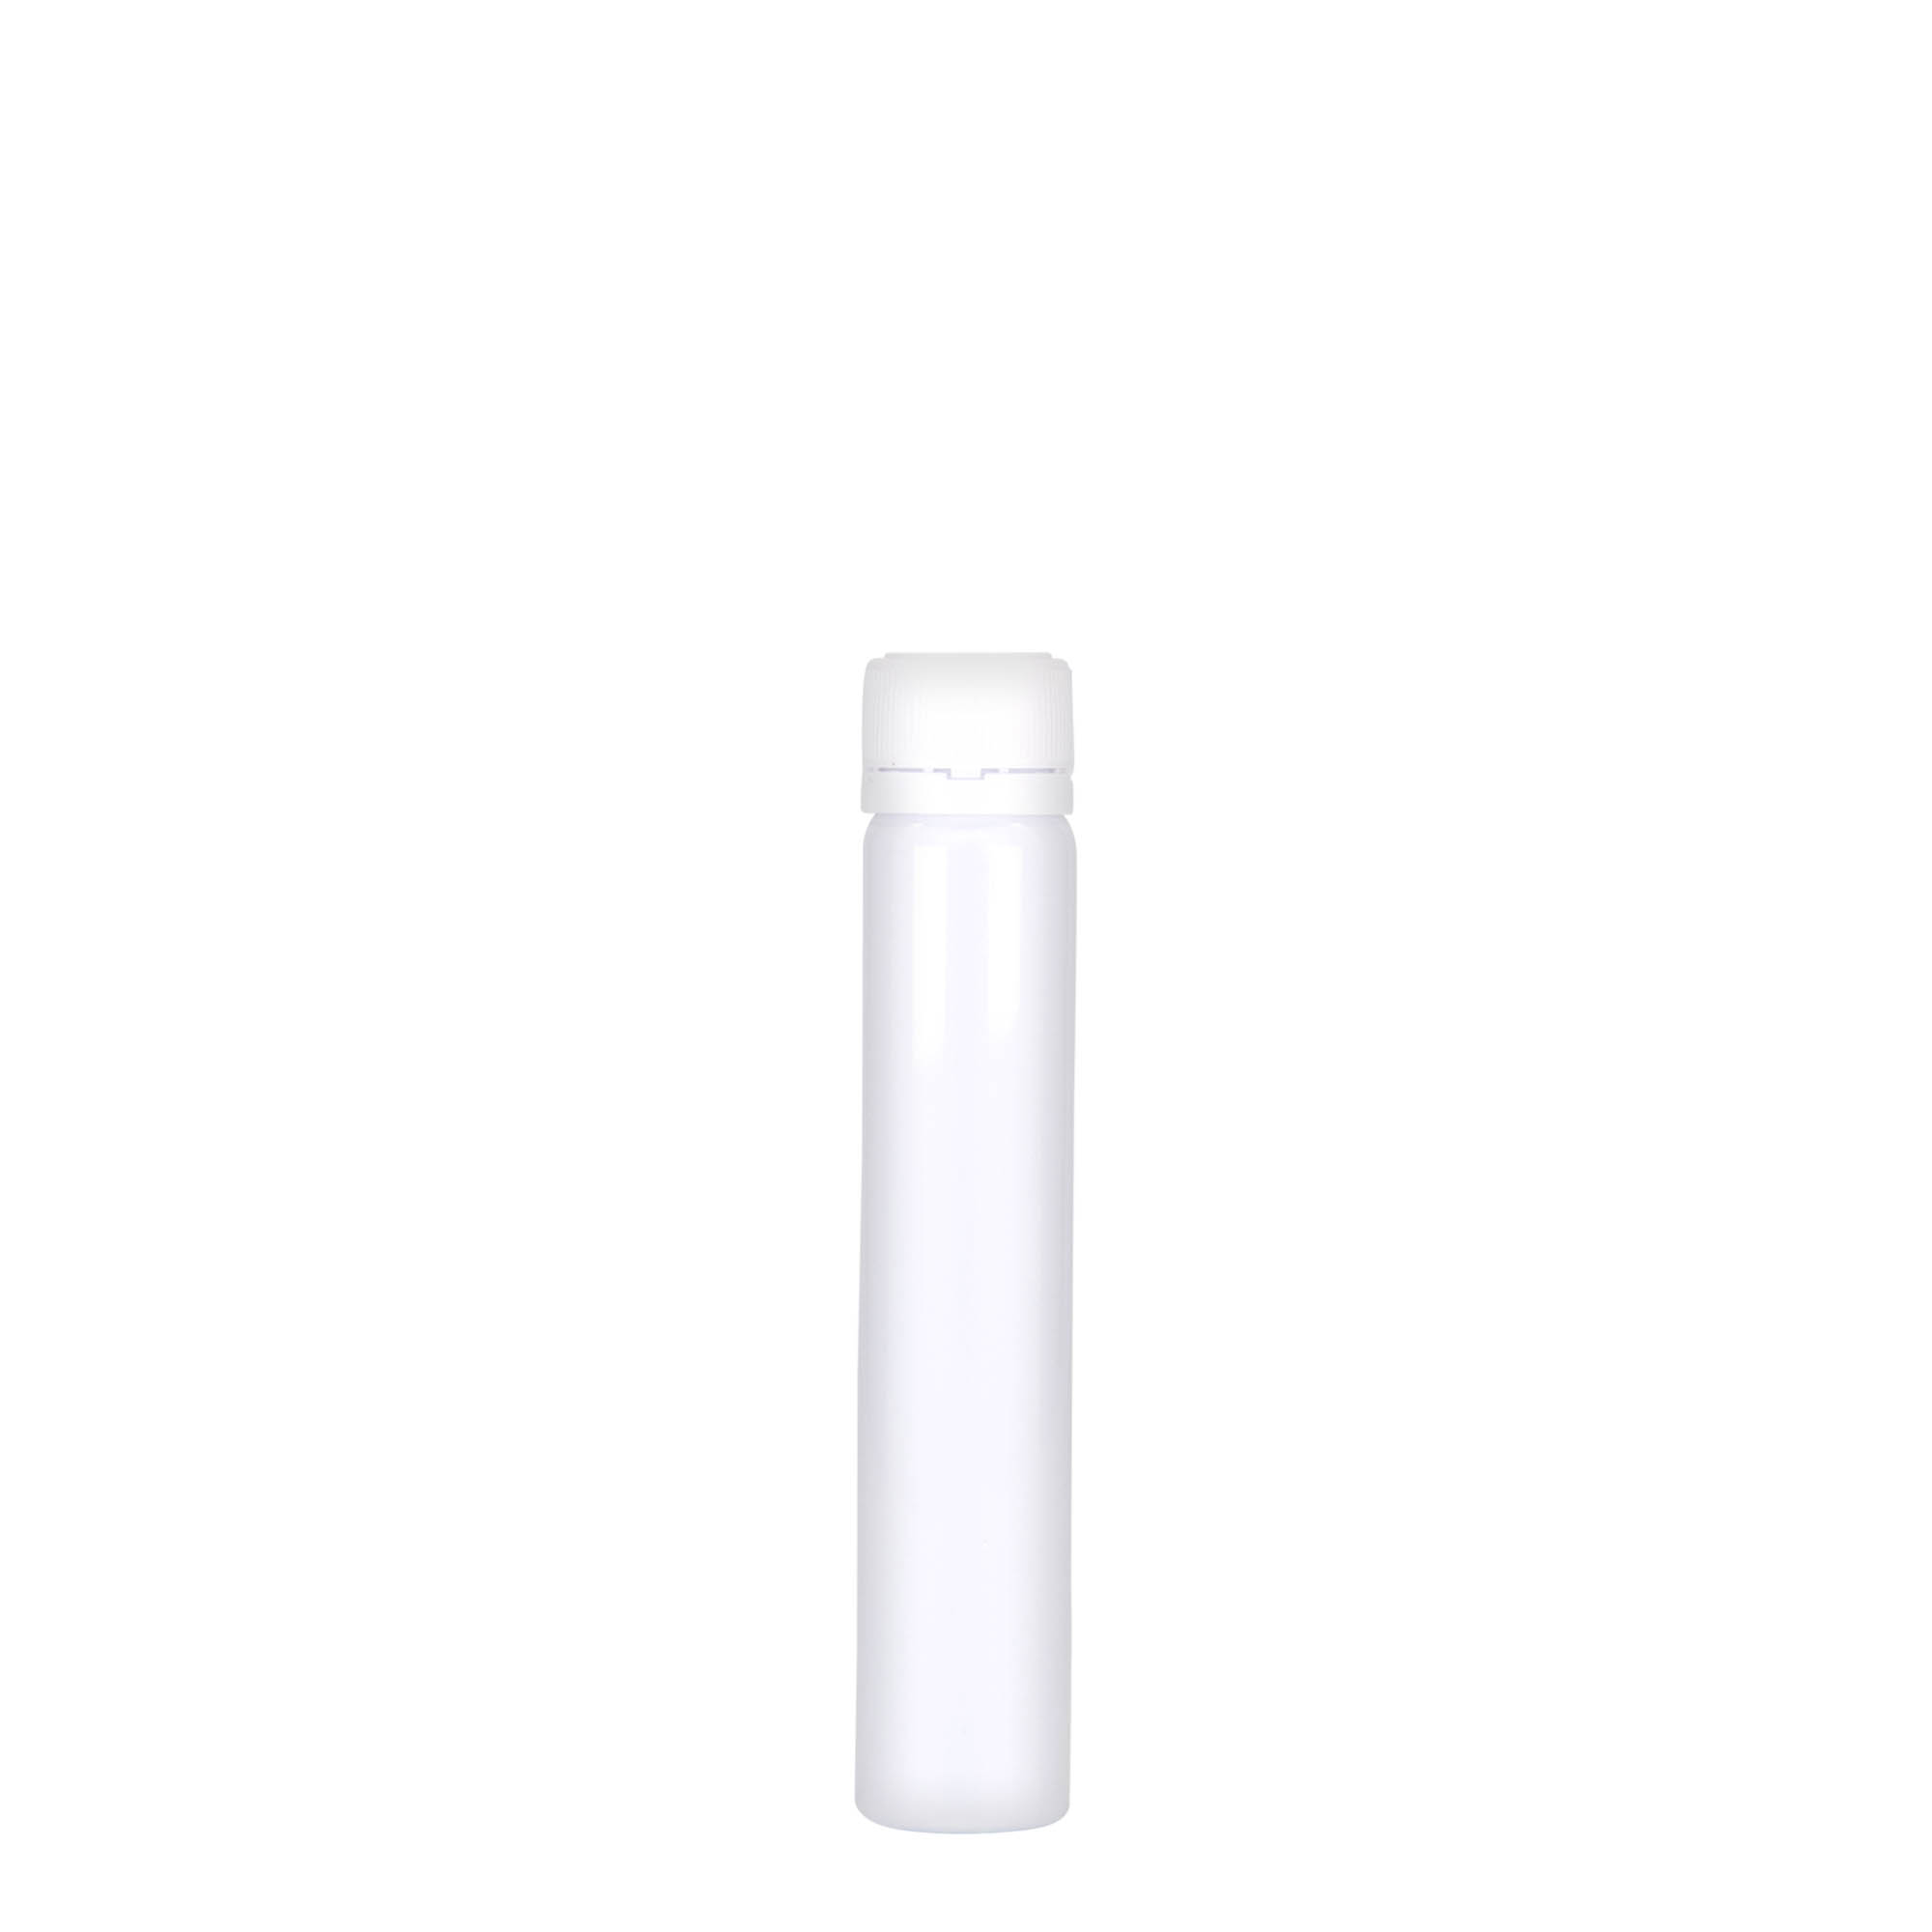 25 ml-es PET-cső, műanyag, fehér, szájnyílás: csavaros kupak